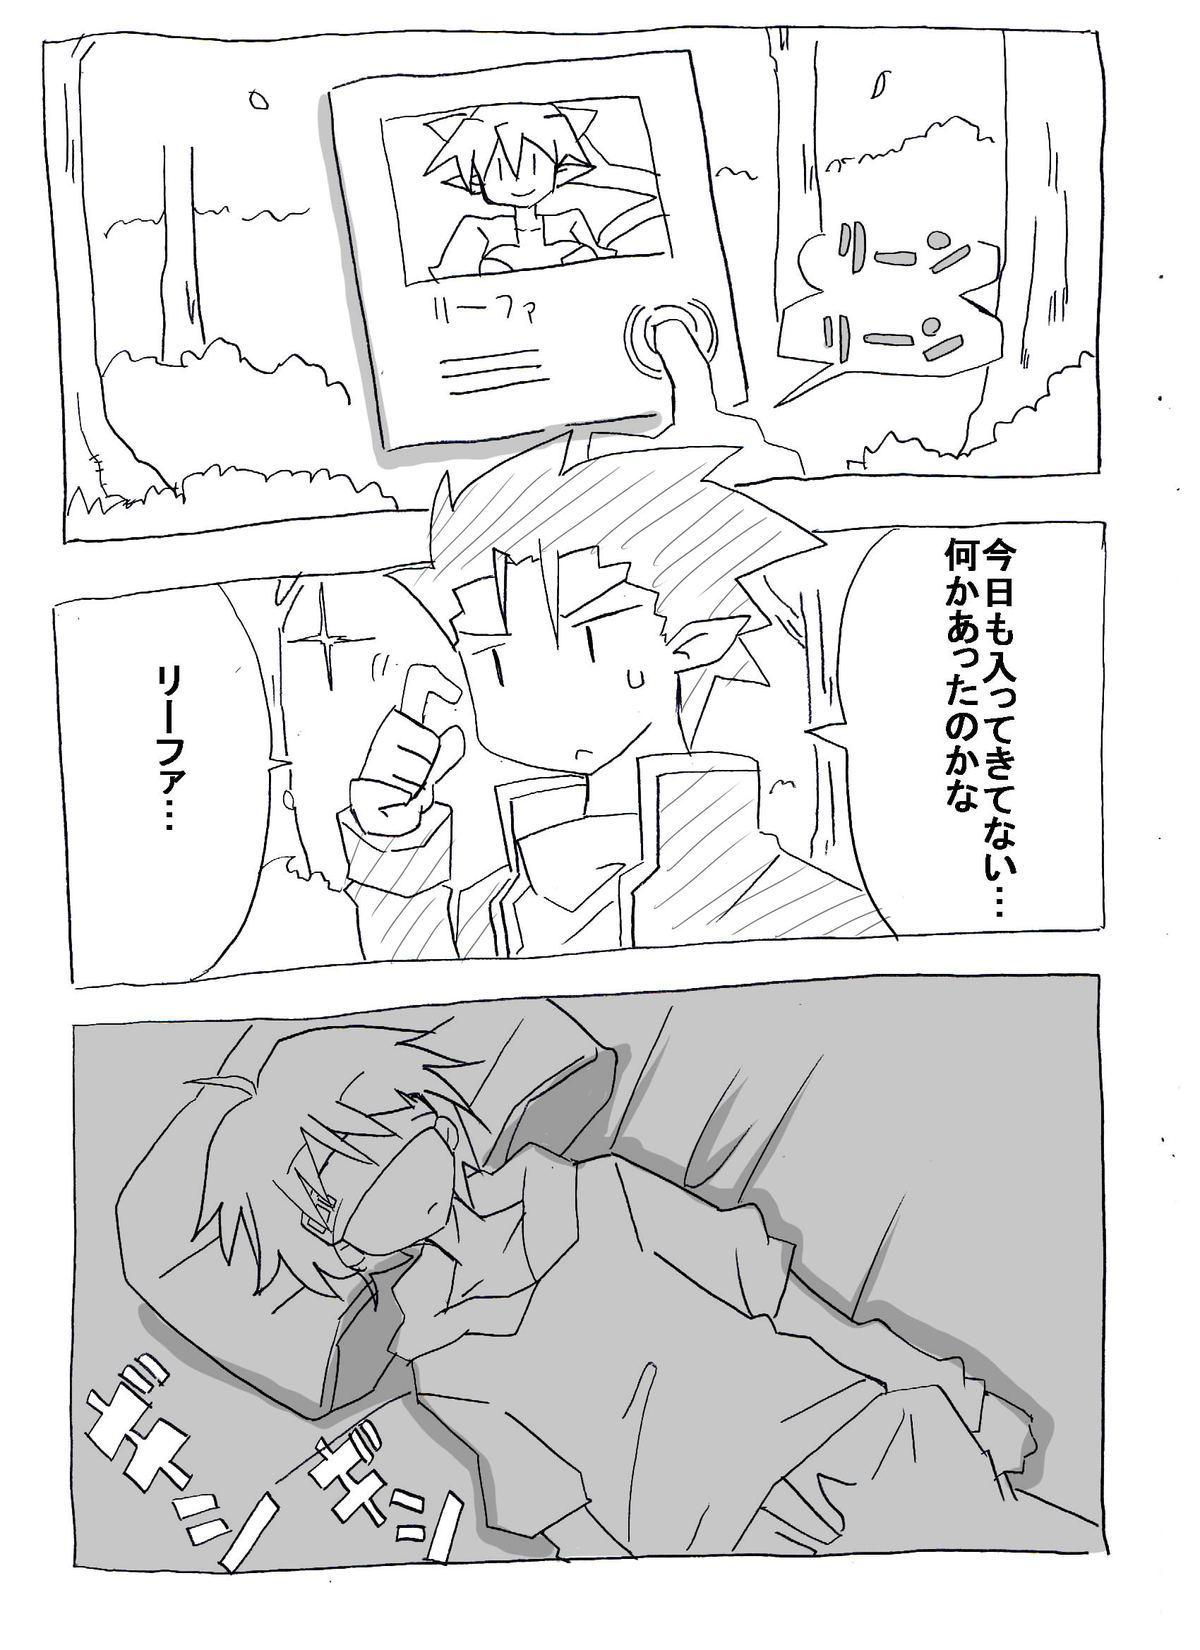 Homo Brocon Imouto wo Jikan Teishi ￫ Minkan ￫ Netori Manga - Sword art online Clip - Page 42